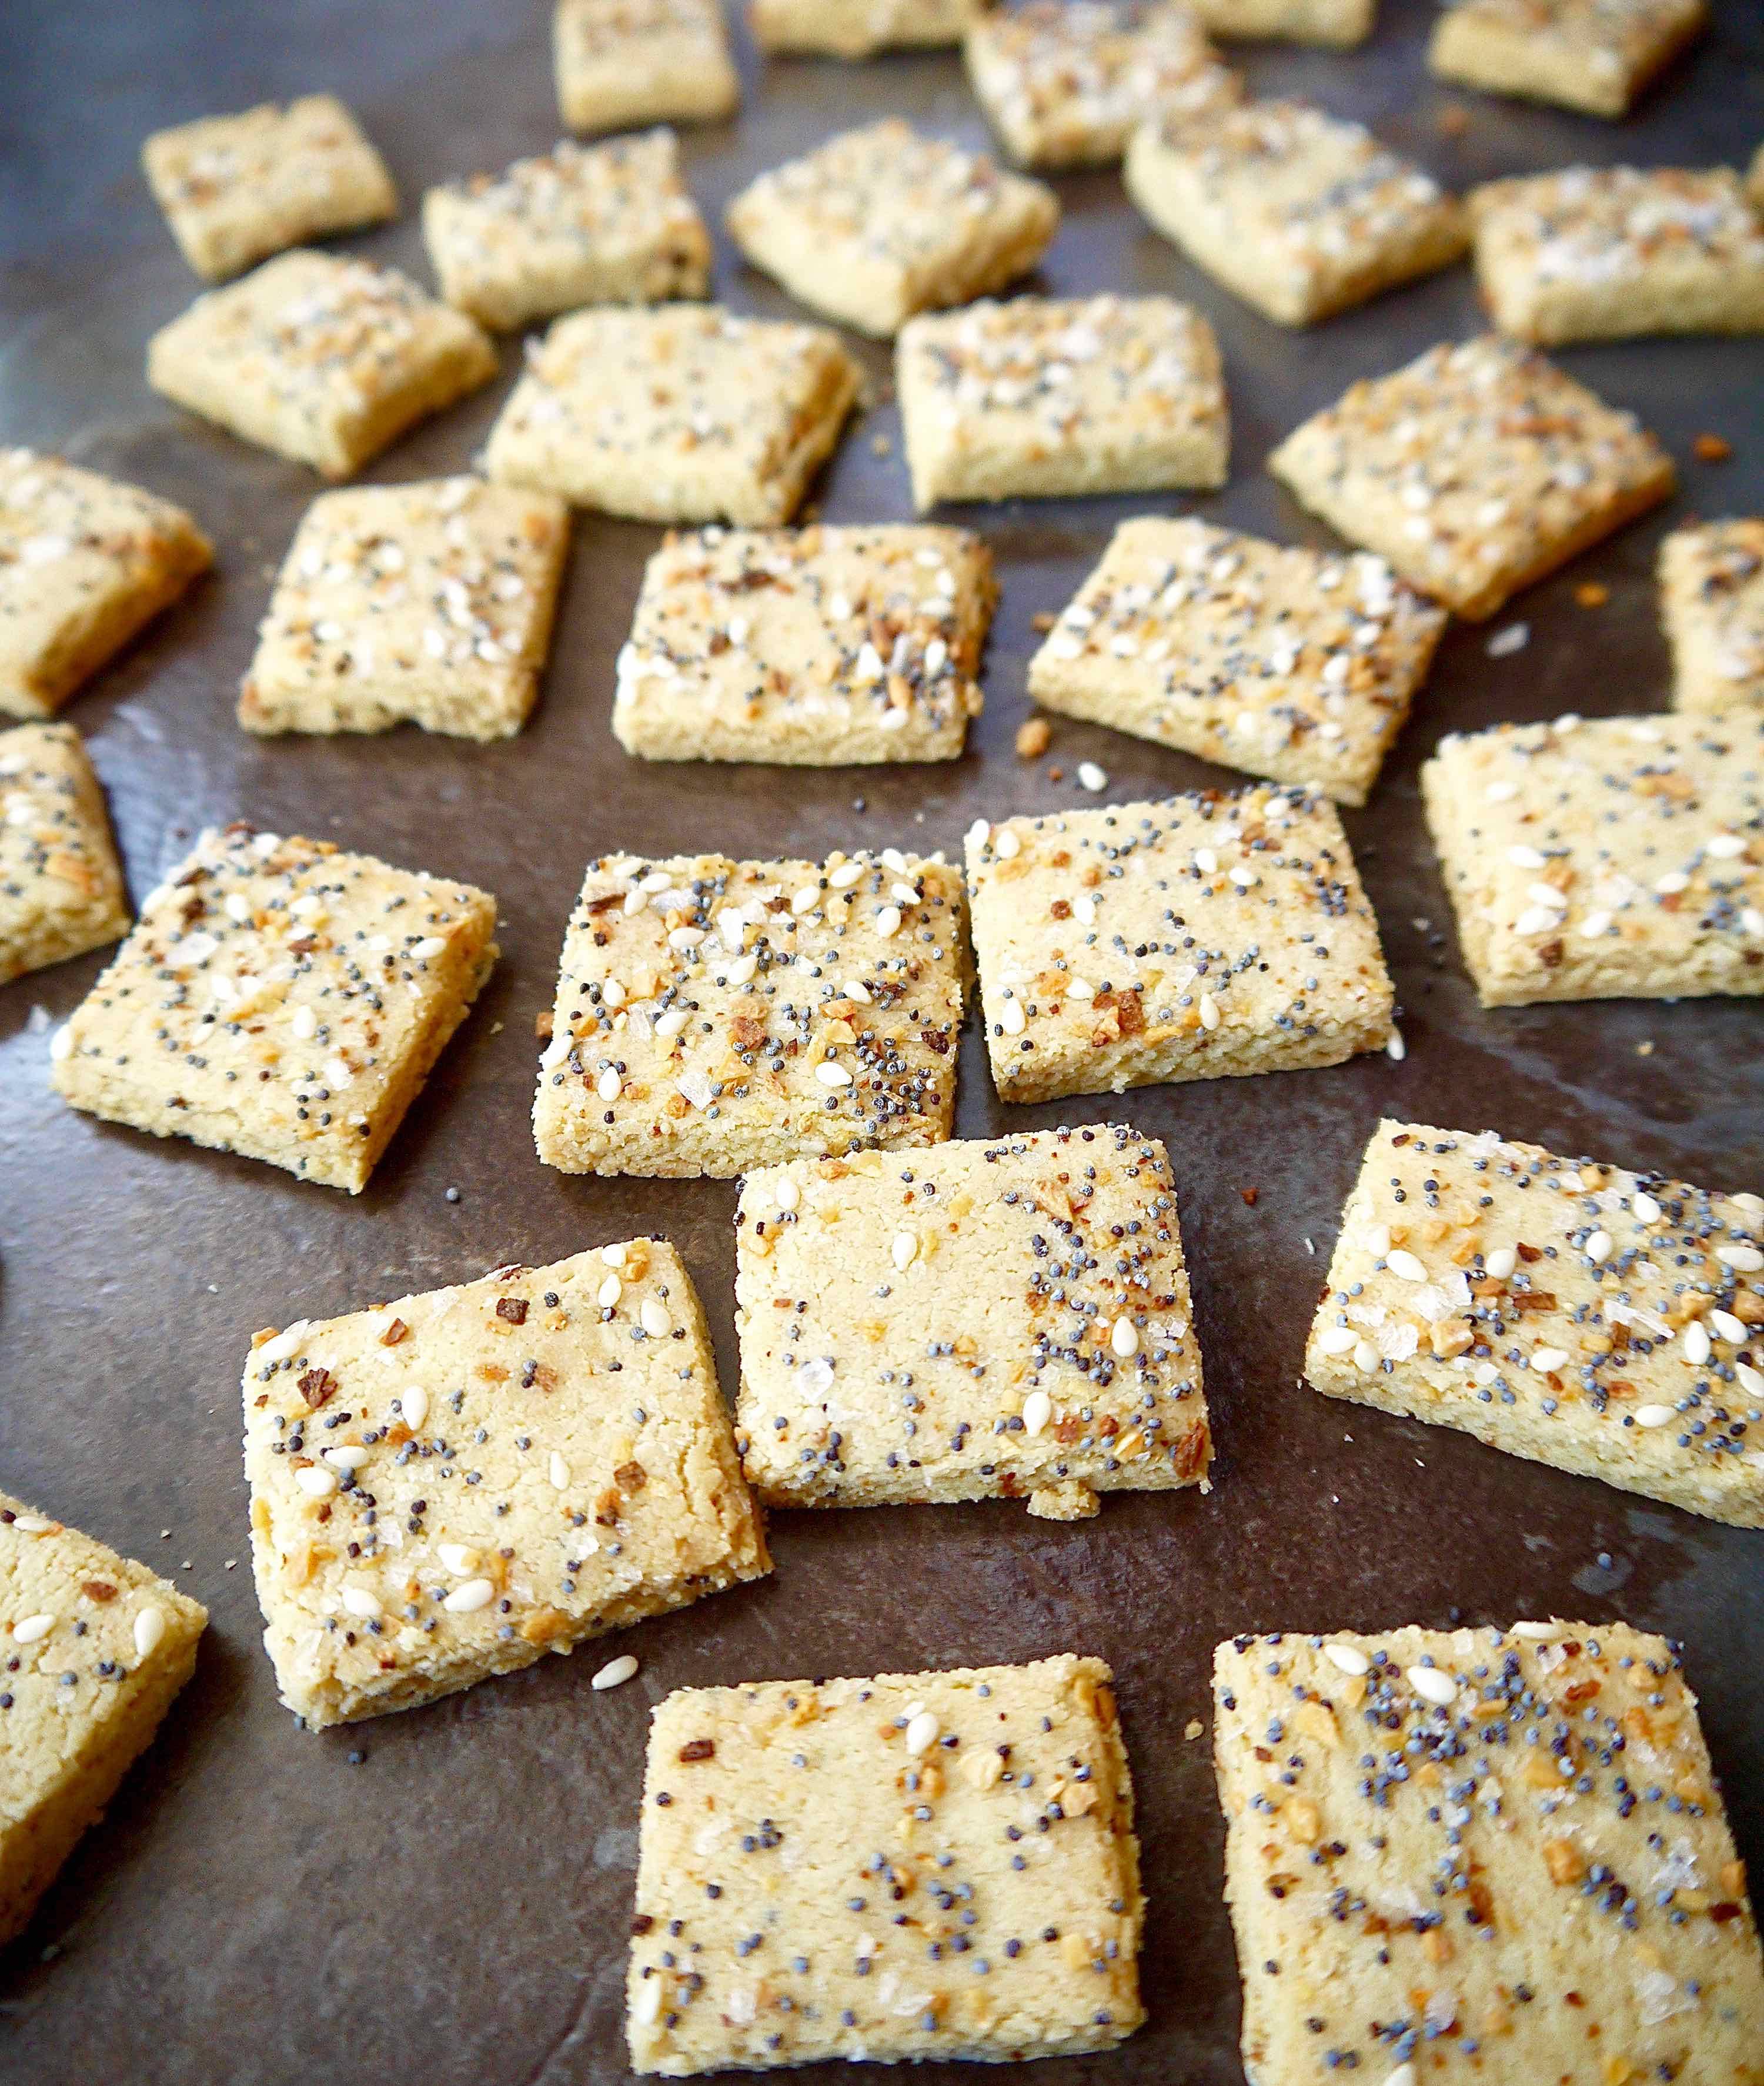 Almond flour cracker dough cut into squares after baking.